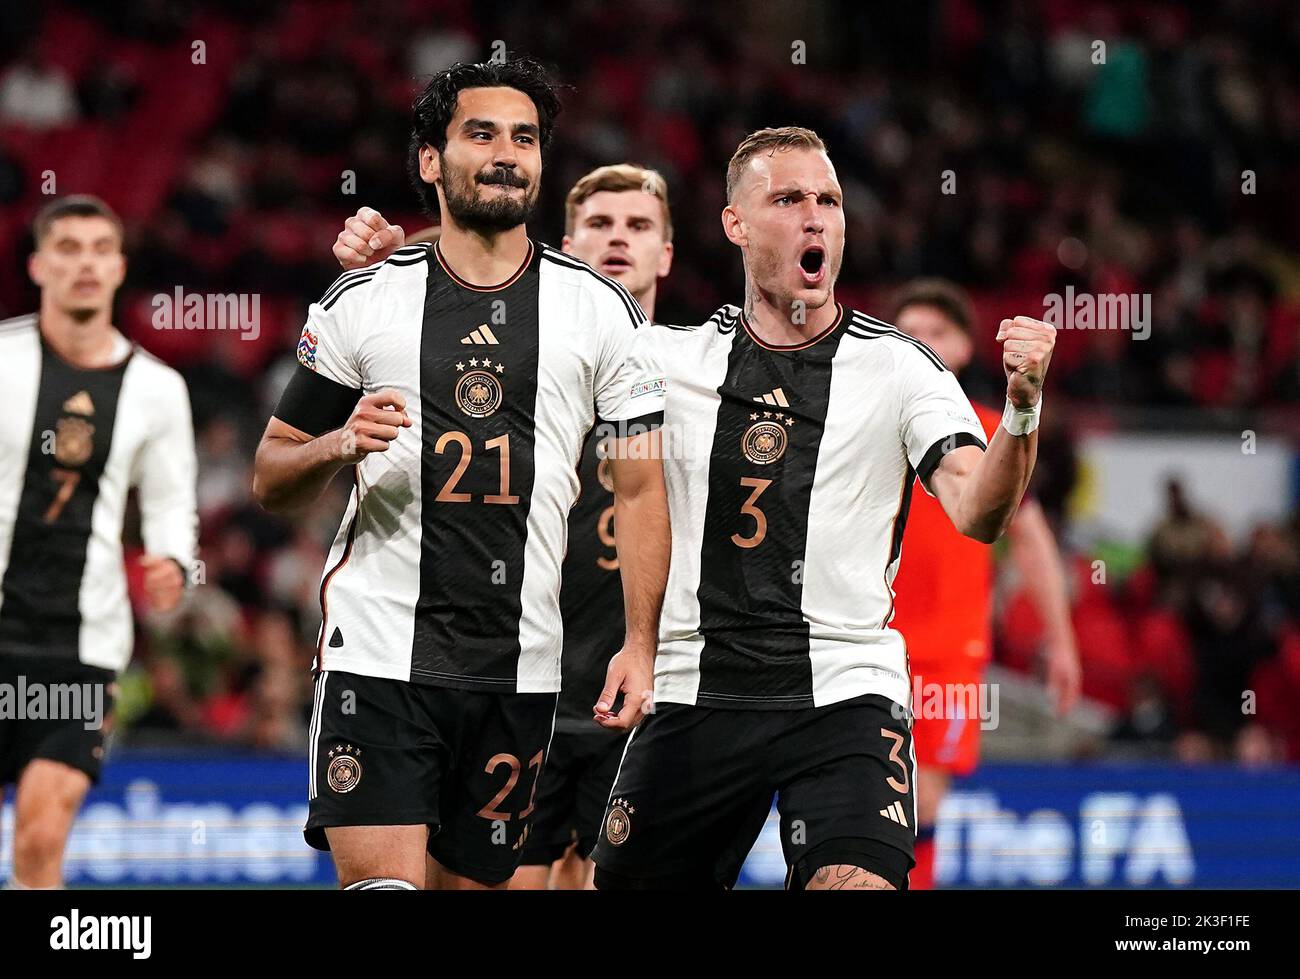 El alemán Ilkay Gundogan celebra marcar el primer gol de su equipo con sus compañeros durante el partido de la Liga de las Naciones de la UEFA en el estadio de Wembley, Londres. Fecha de la foto: Lunes 26 de septiembre de 2022. Foto de stock